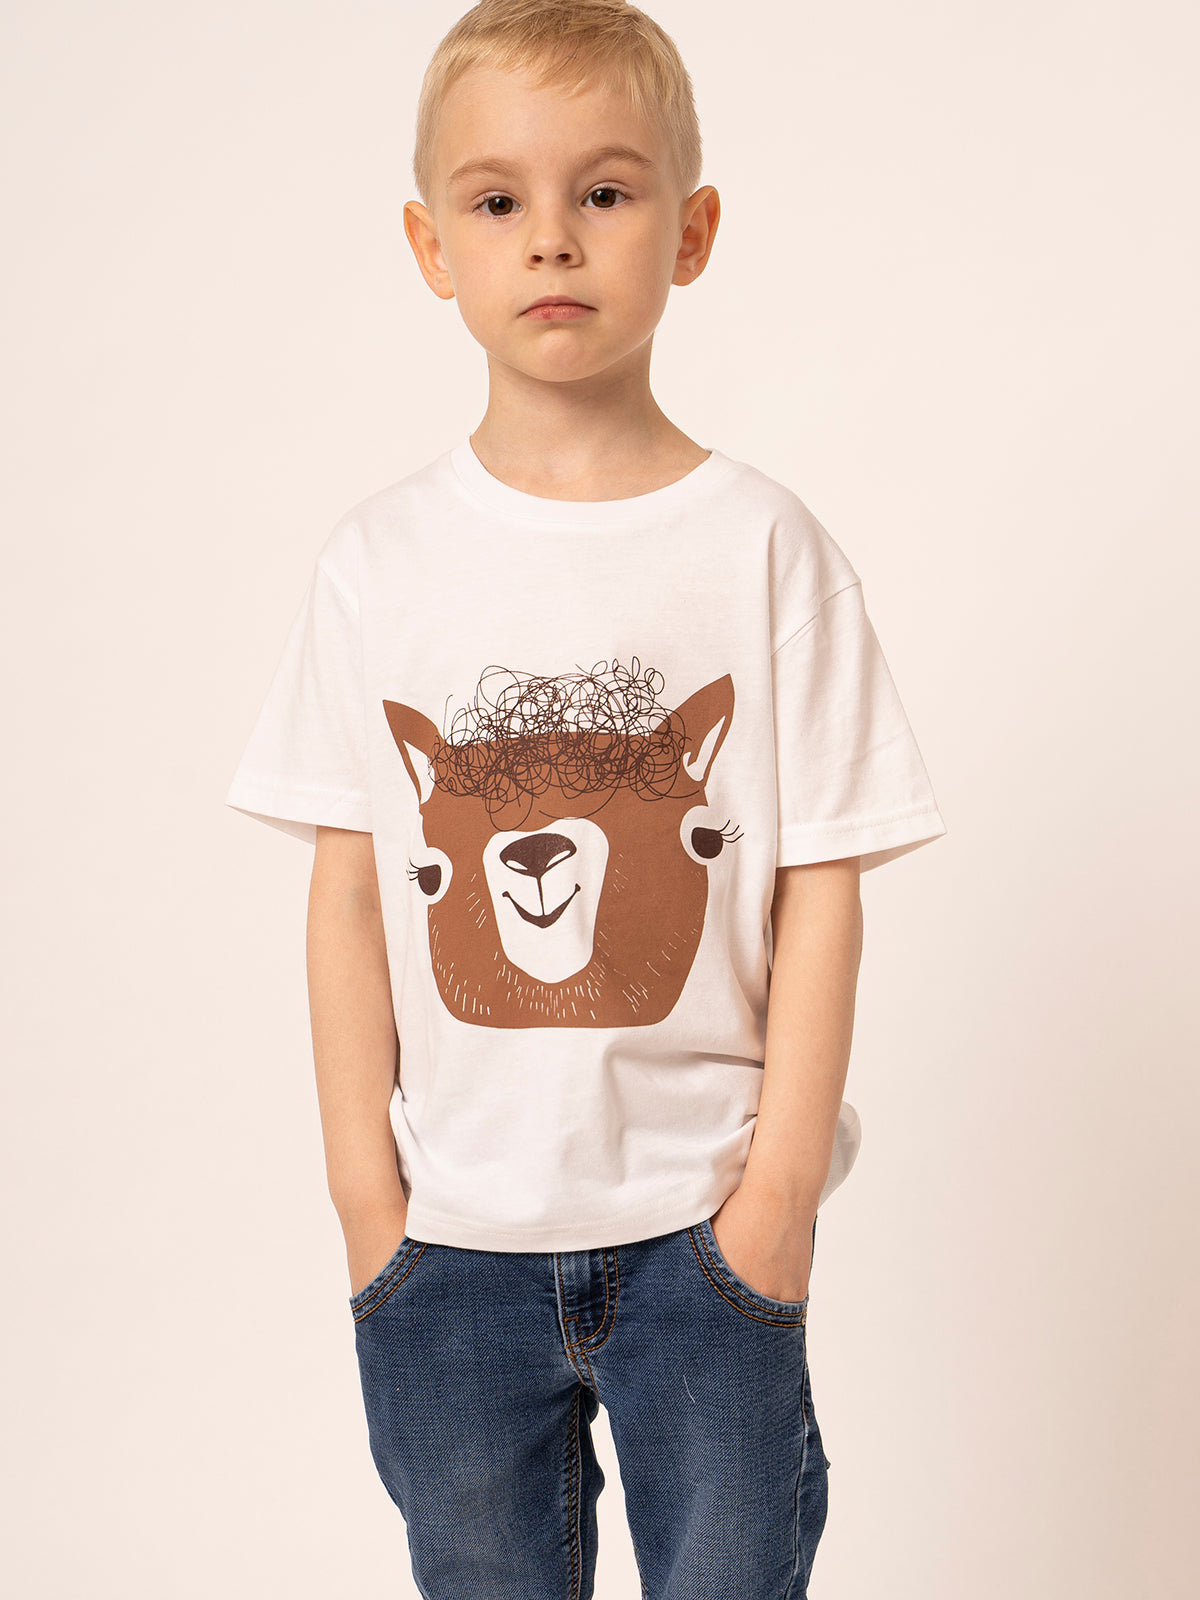 White children's t-shirt with alpaca pattern